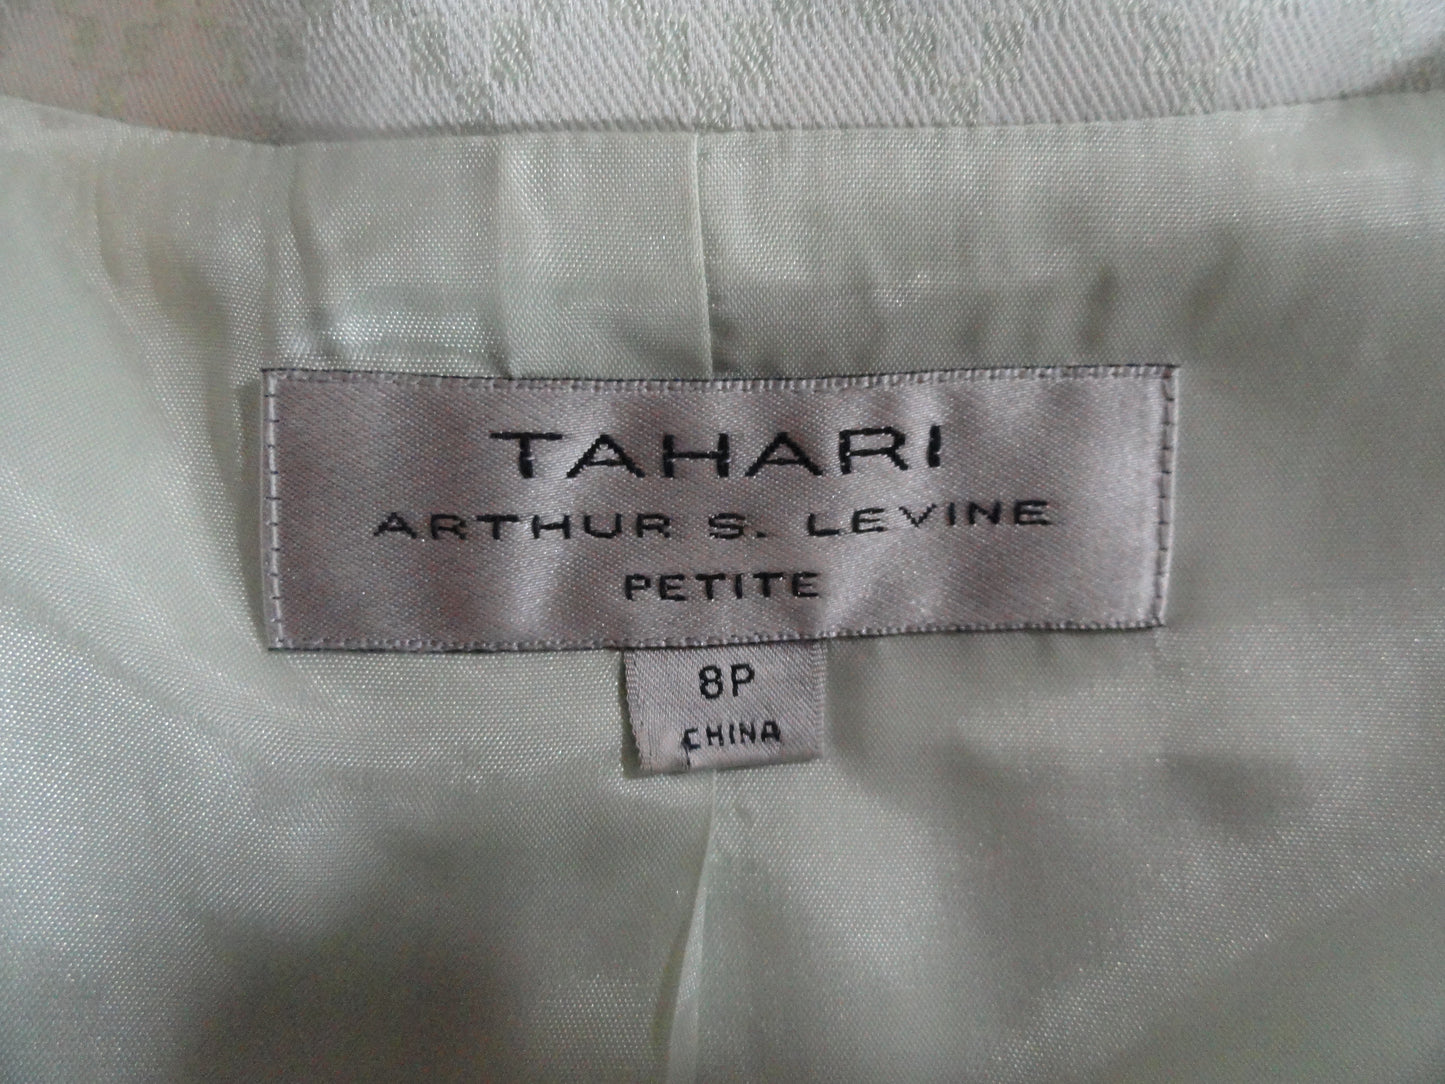 Tahari Arthur S. Levine 90's Jacket and Skirt Set Sz 8P SKU 000285-5